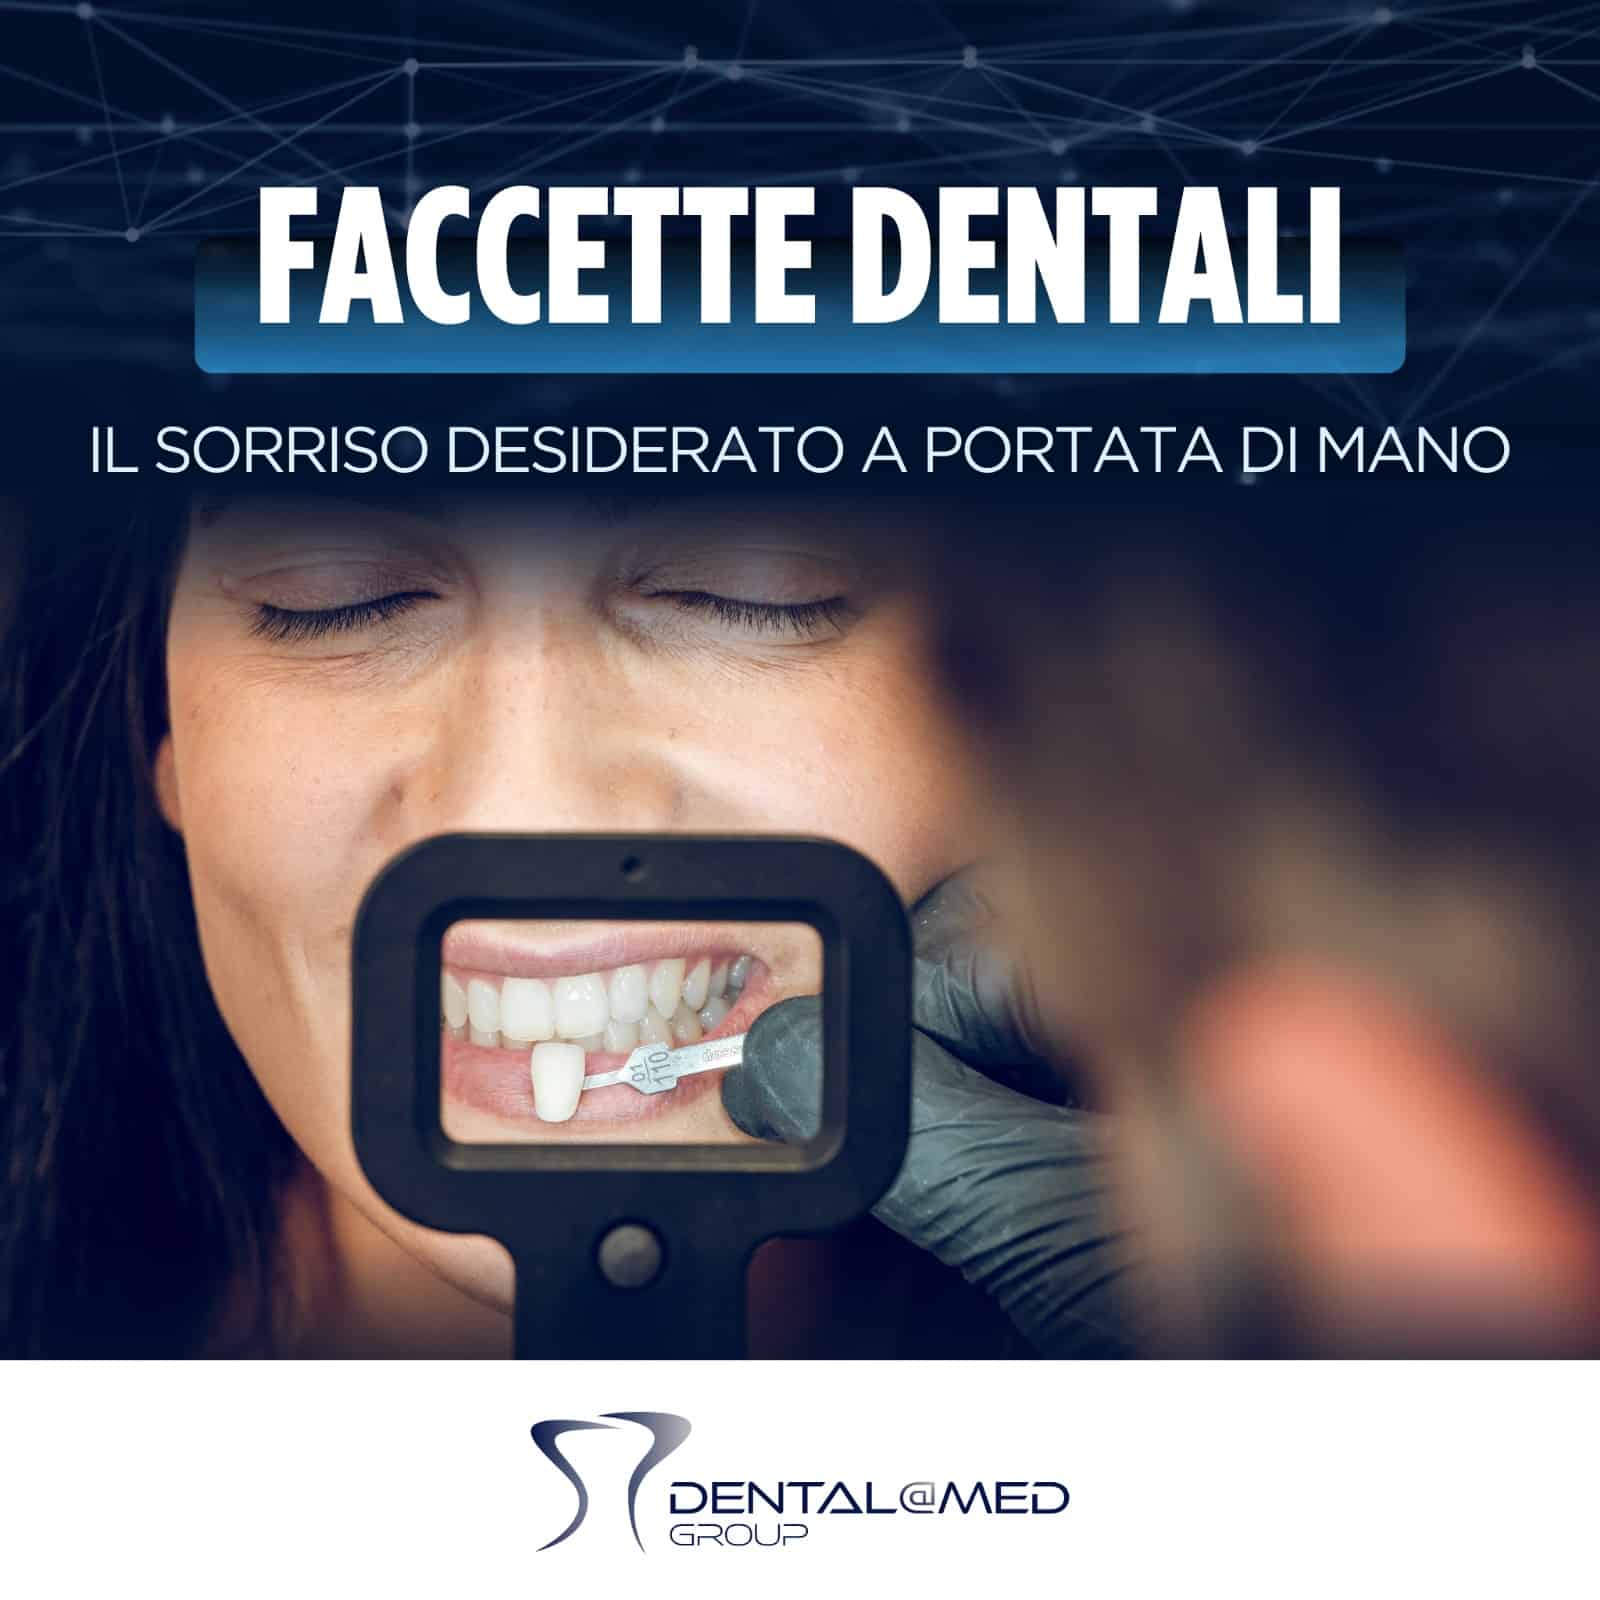 Pubblicità di Faccette Dentali che mostra un primo piano di un intervento odontoiatrico in corso.